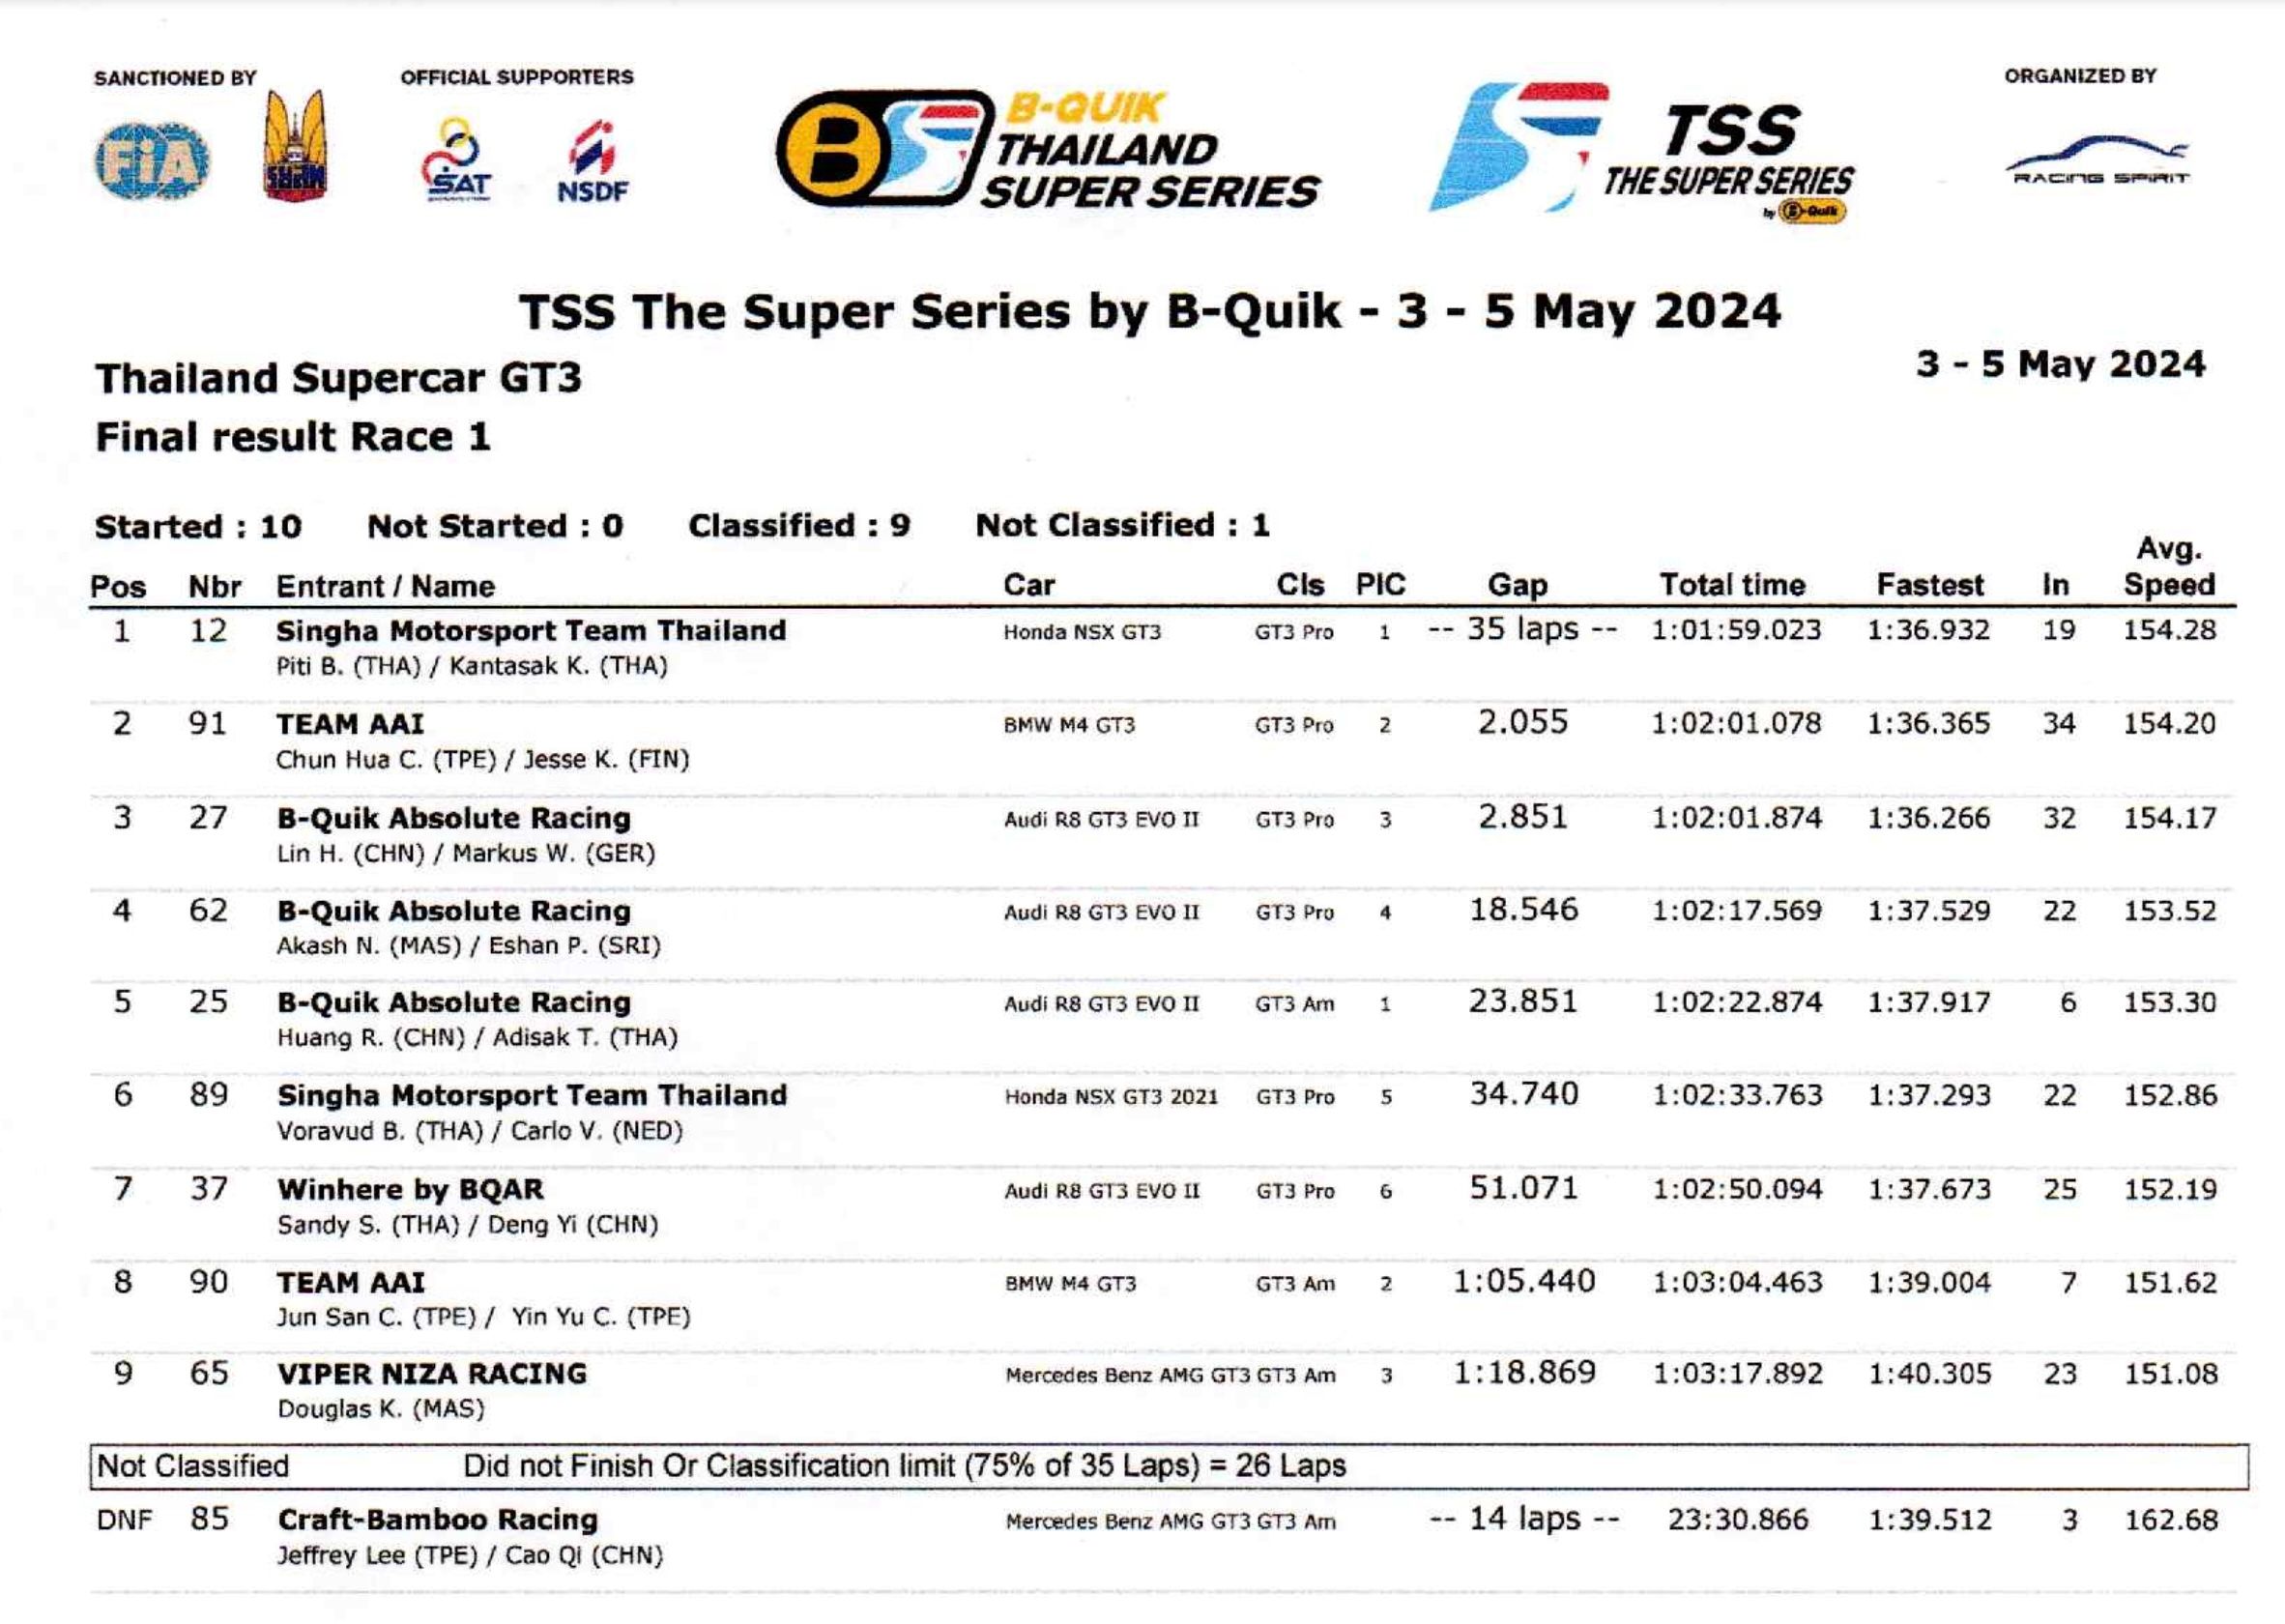 Résultat final des courses 1 et 2 de TSS The Super Series by B-Quik 2024